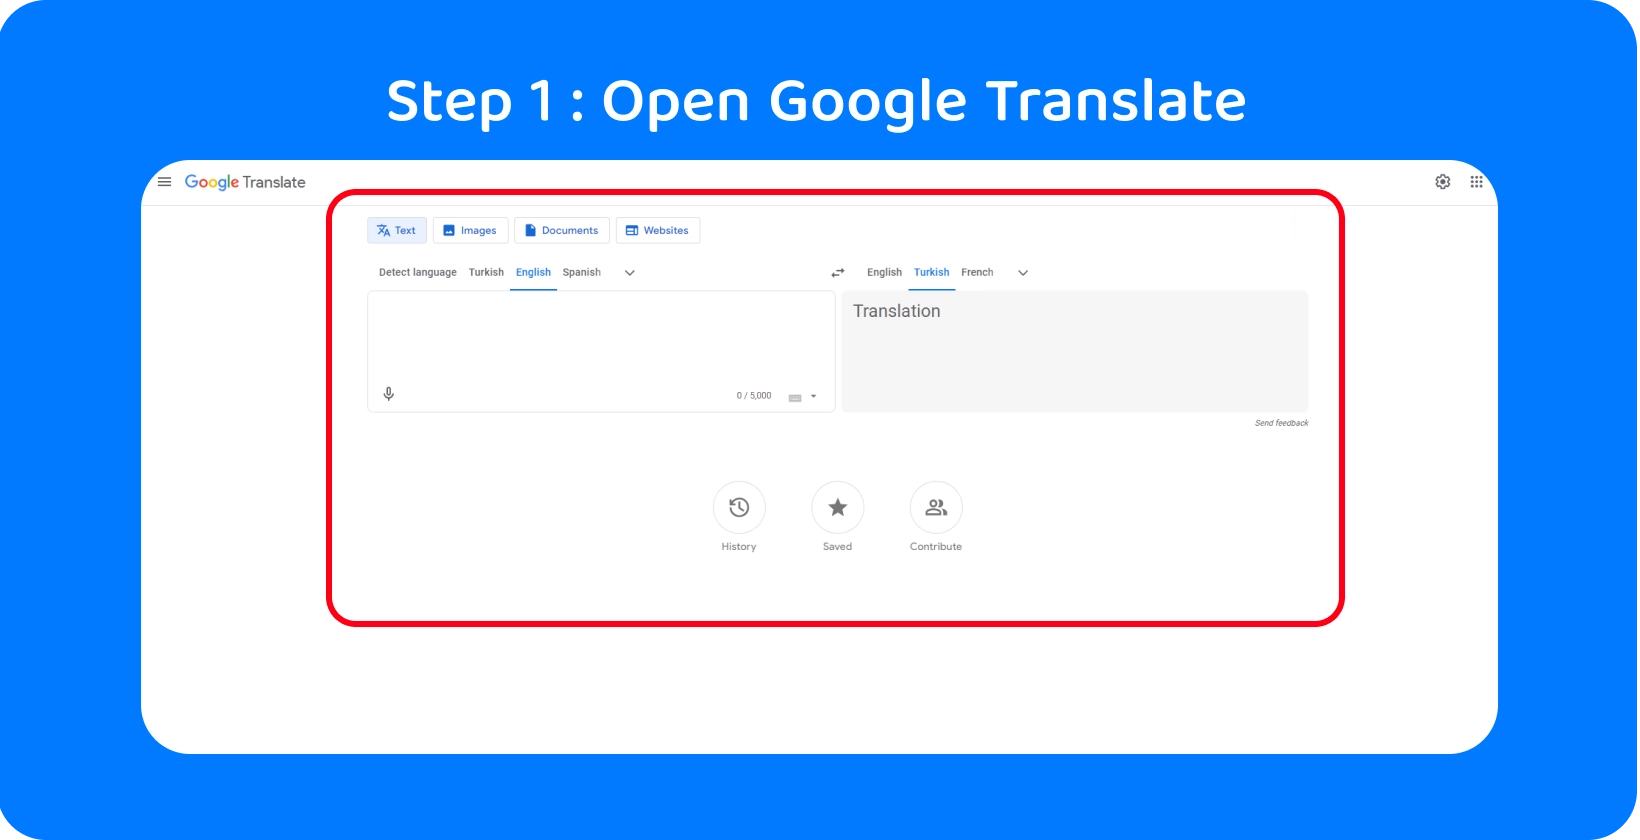 Interfejs Google Translate gotowy do konwersji wypowiadanych słów na tekst, ilustrując krok 1 w procesie.